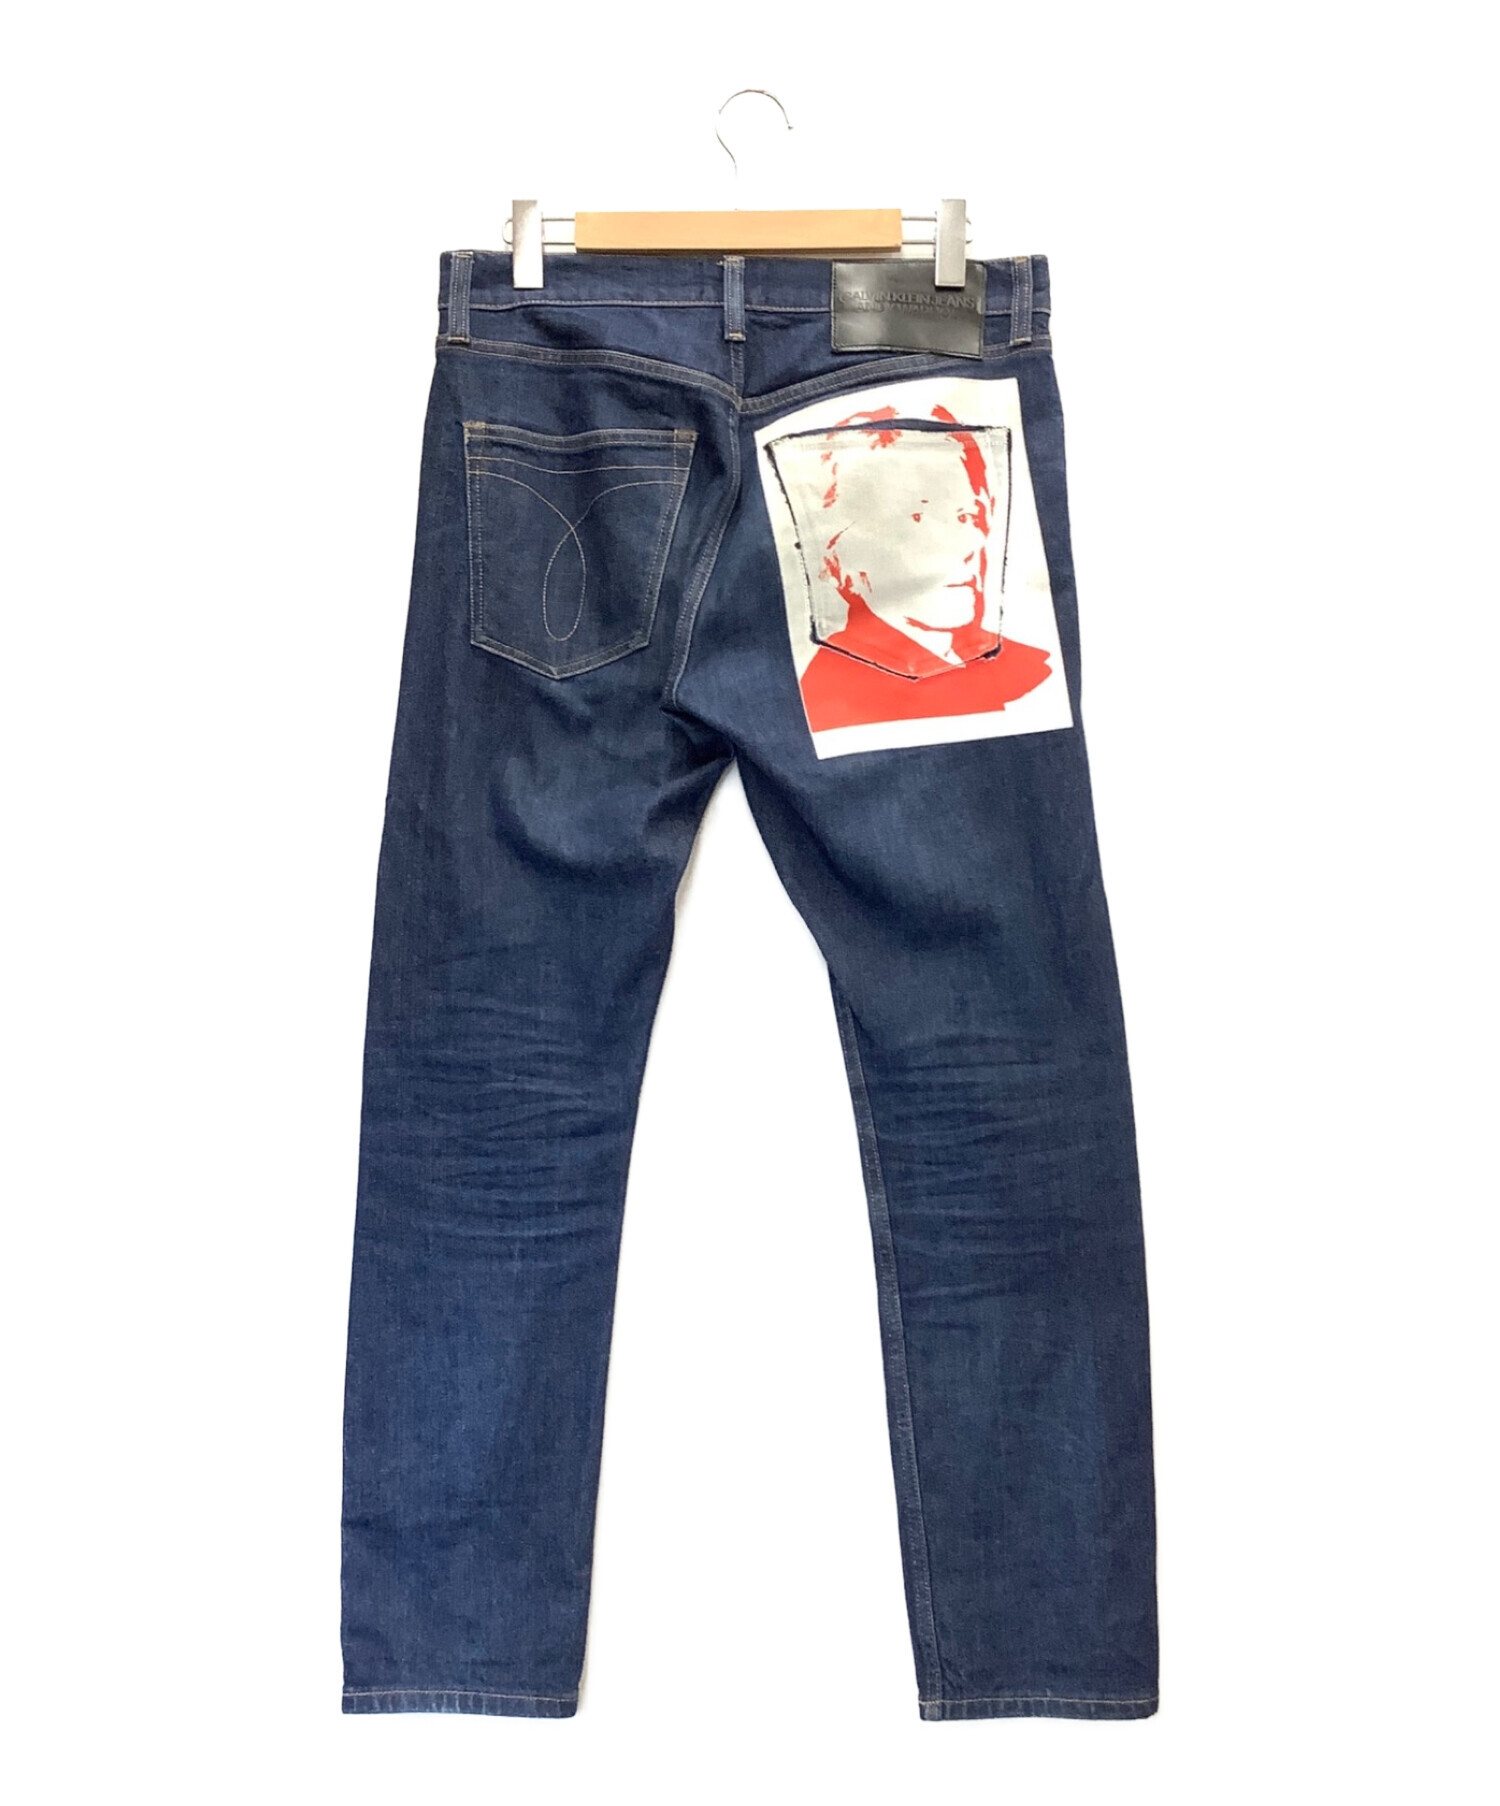 Calvin Klein Jeans (カルバンクラインジーンズ) ANDY WARHOL (アンディウォーホル) プリントデニムパンツ インディゴ  サイズ:W30×L30